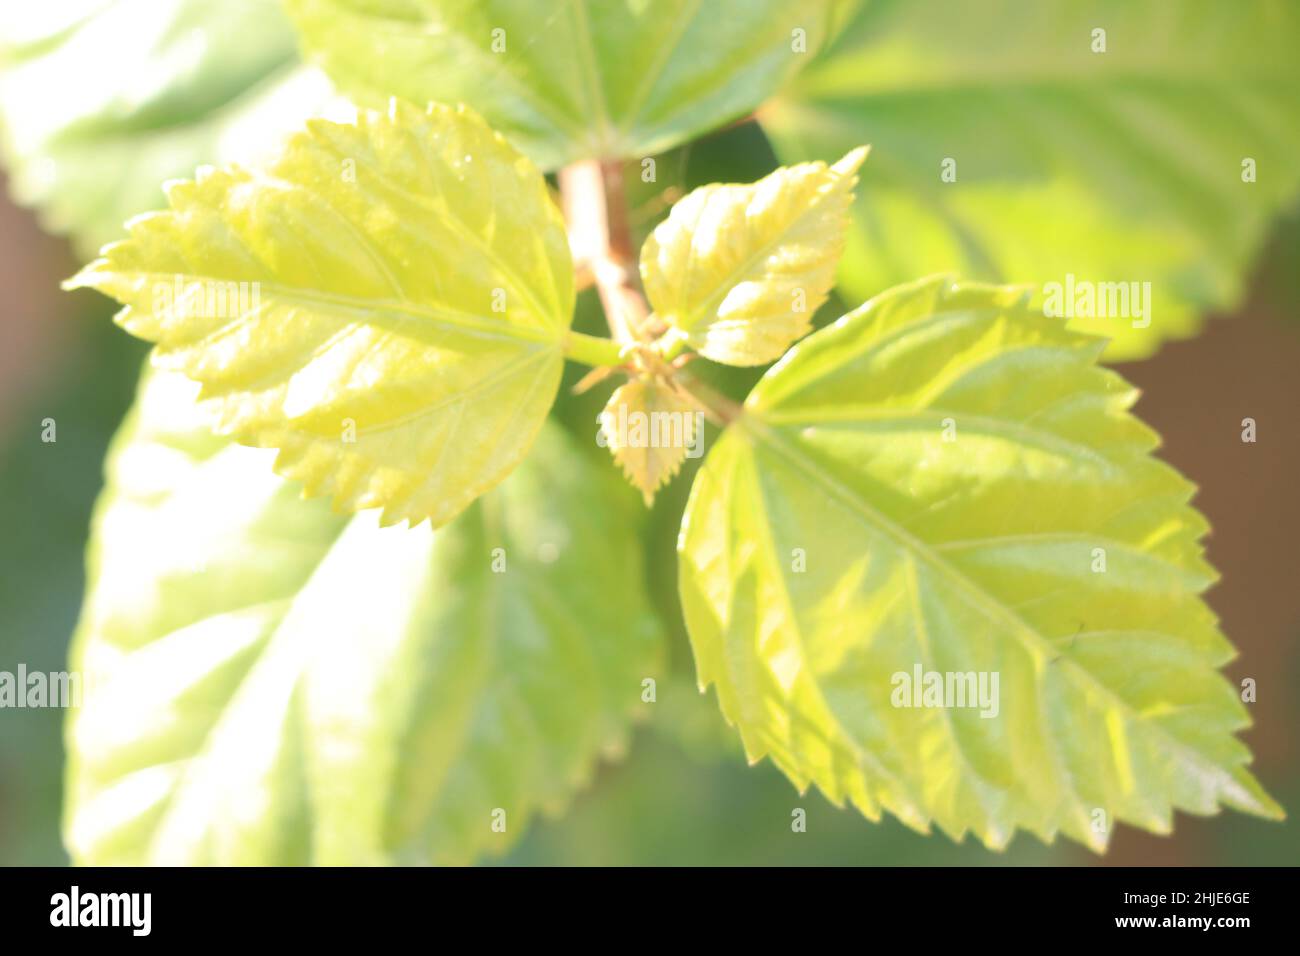 Grünblatt Pflanze Draufsicht Stockfotografie - Alamy